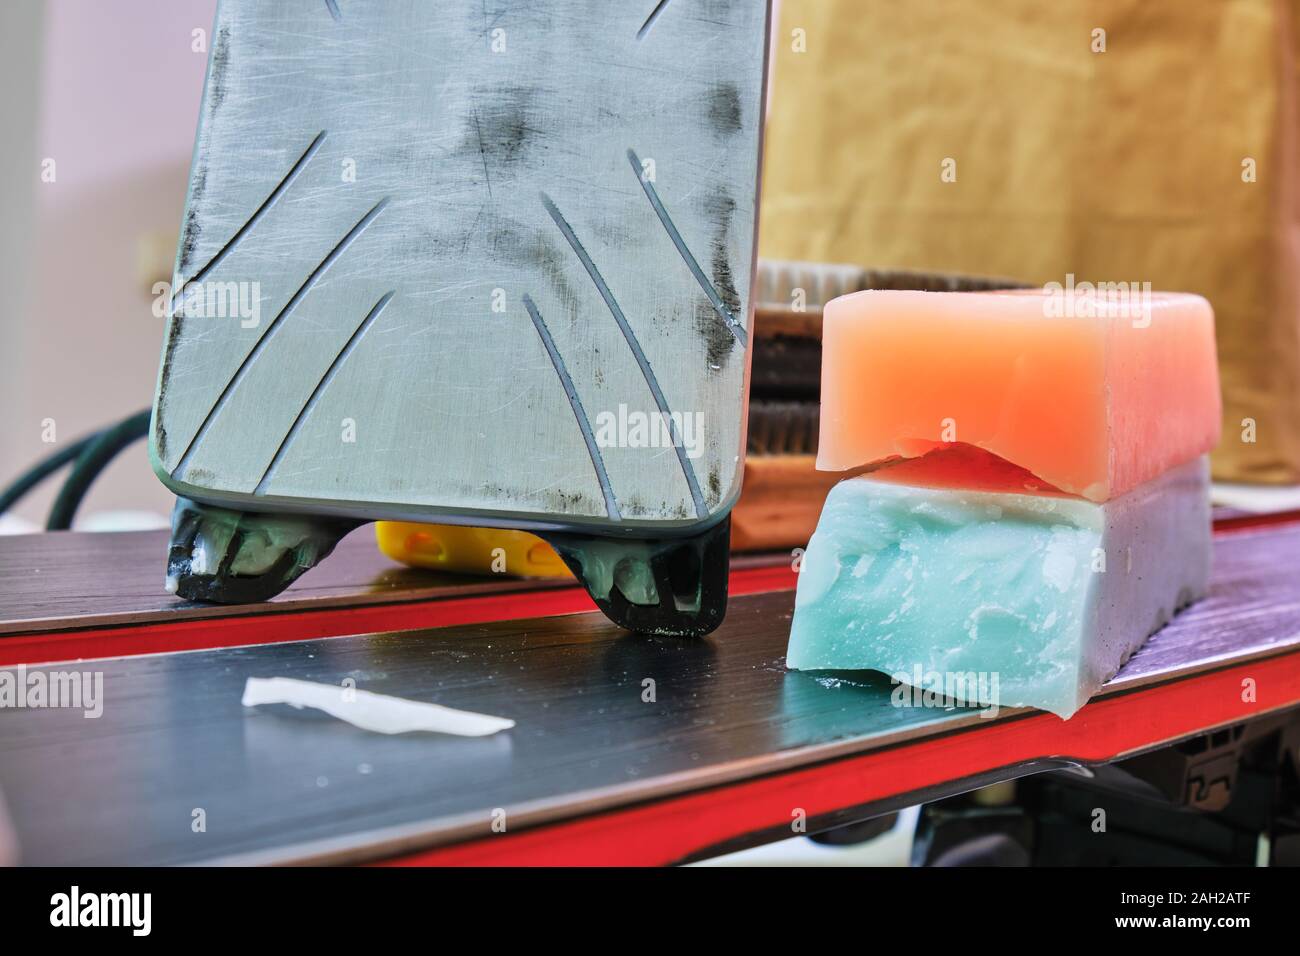 Sci wax ferro e barre di cera, colorato di arancione e teal per diverse temperature previste sulla parte superiore di un paio di sci. Sci di base il concetto di sintonizzazione. Foto Stock